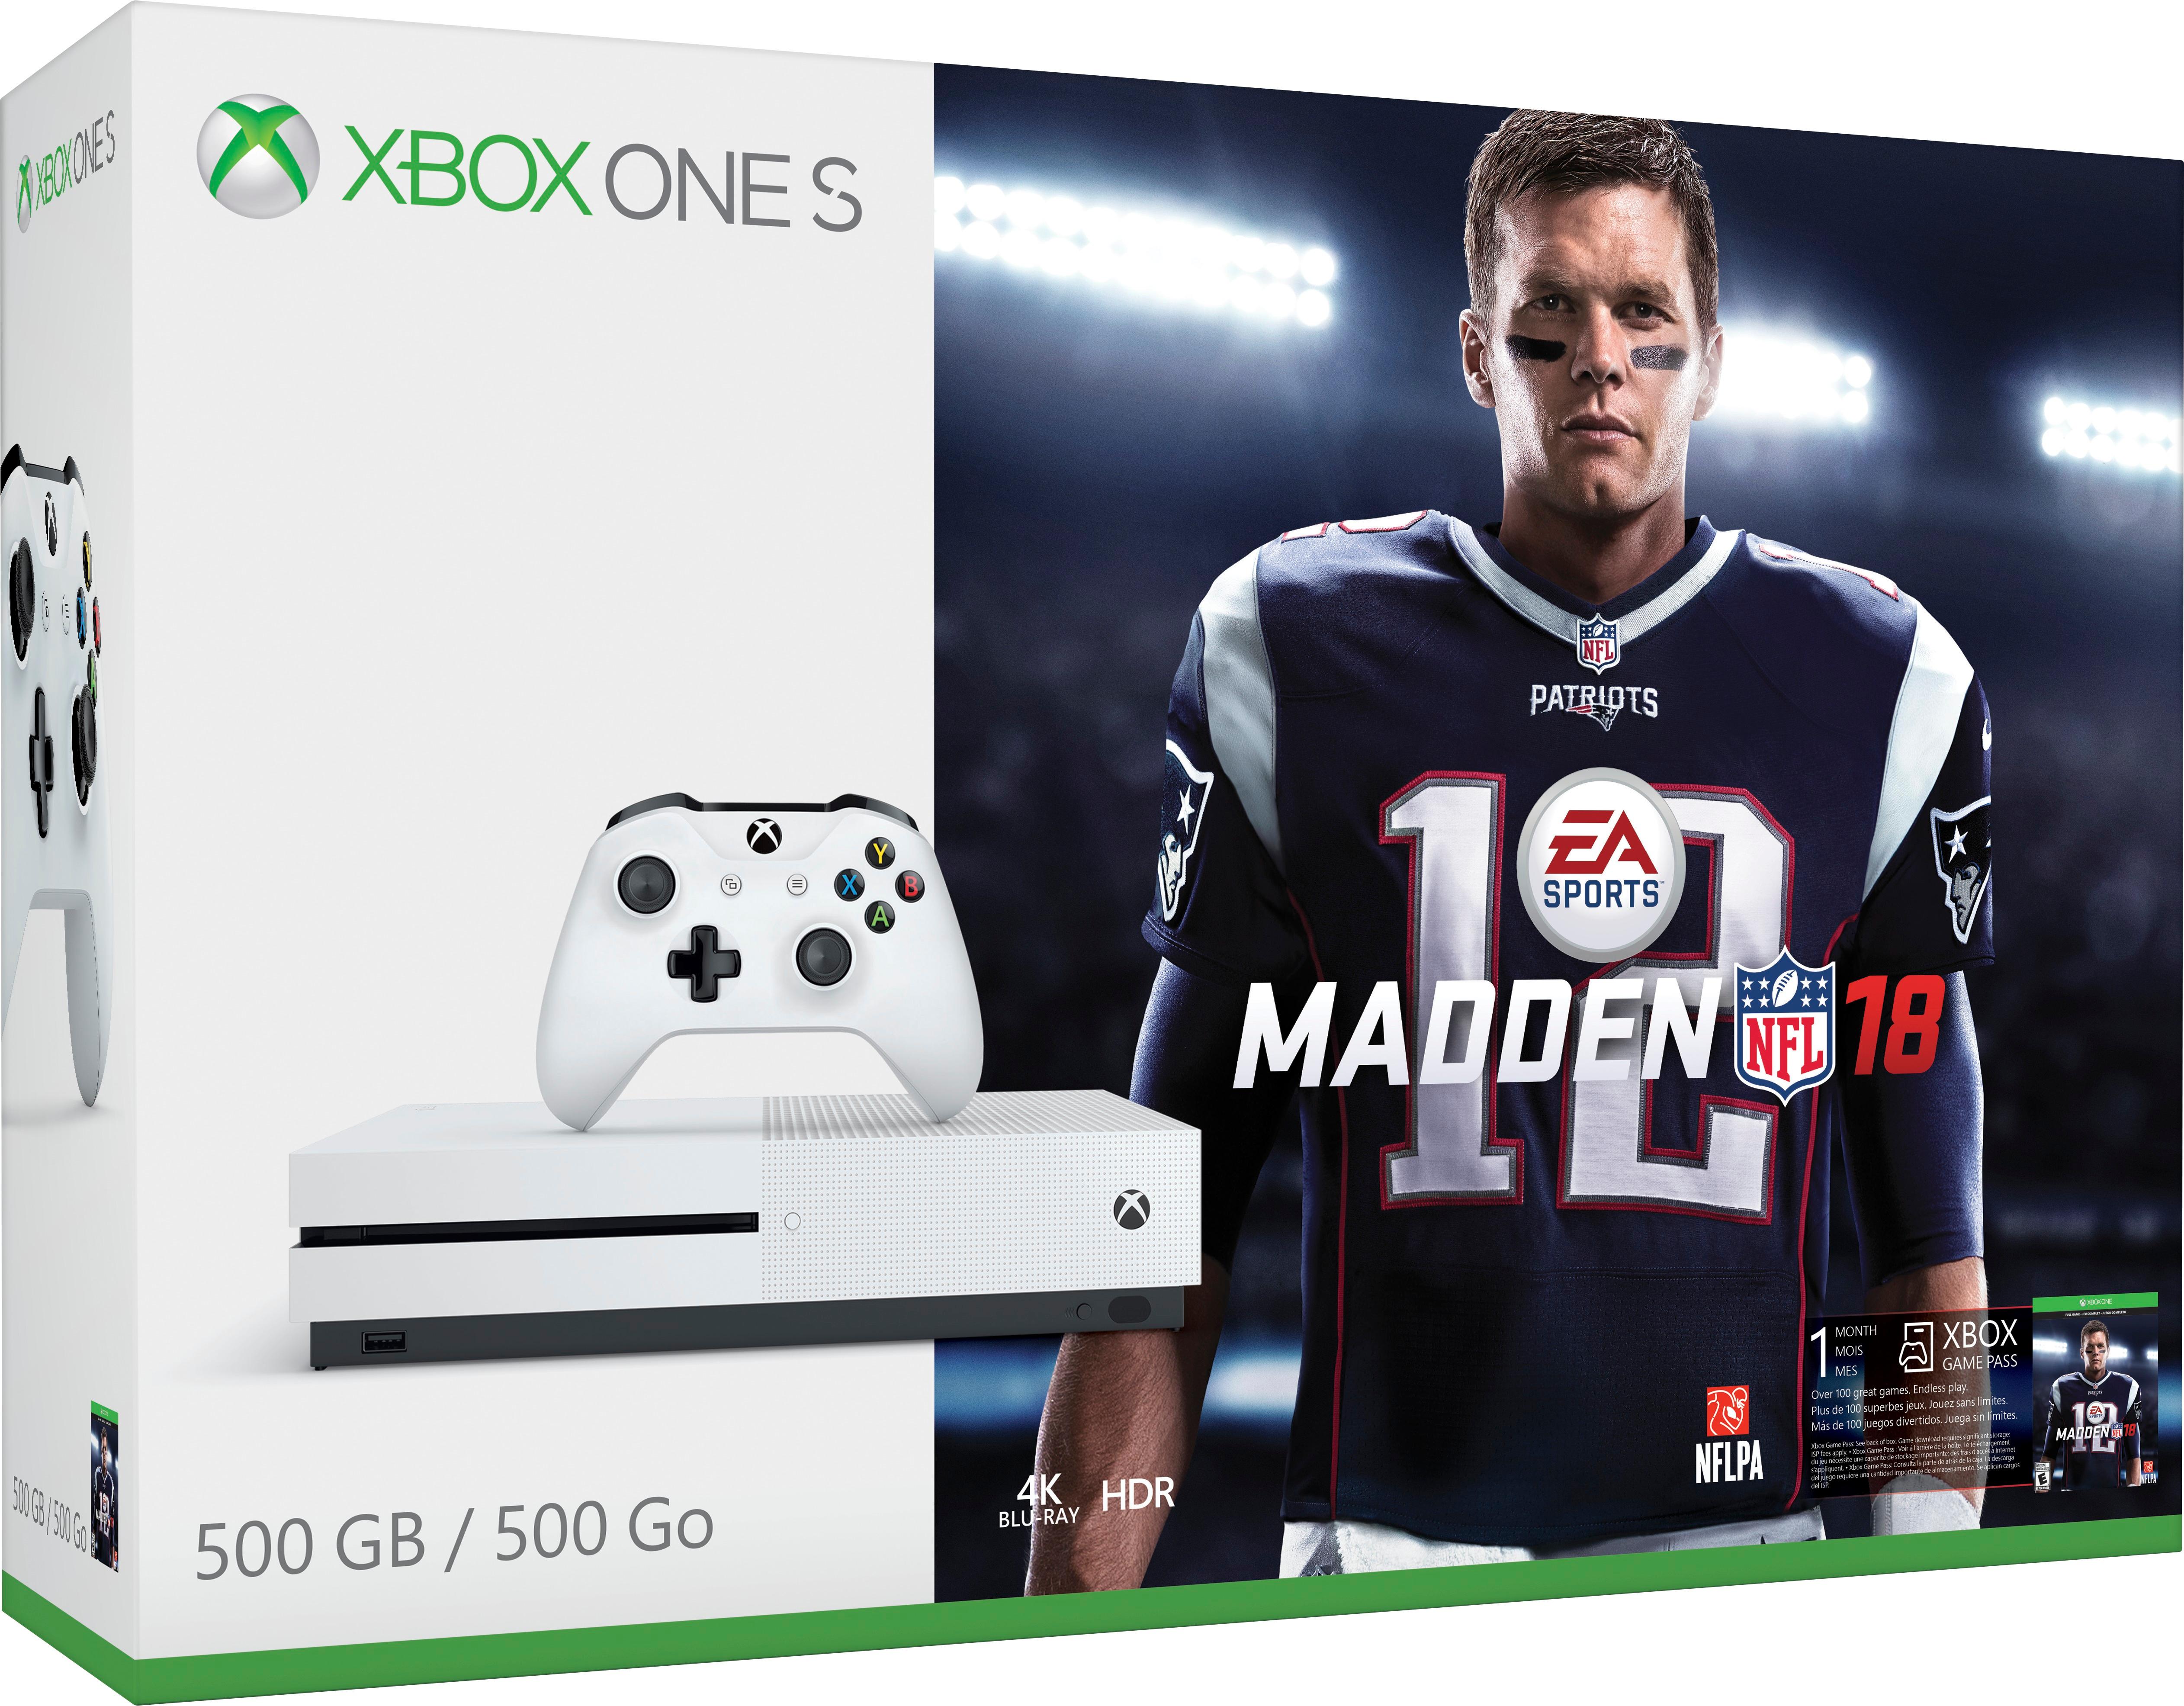 Best Buy: Microsoft Xbox One S 500GB Madden NFL 18 Bundle with 4K